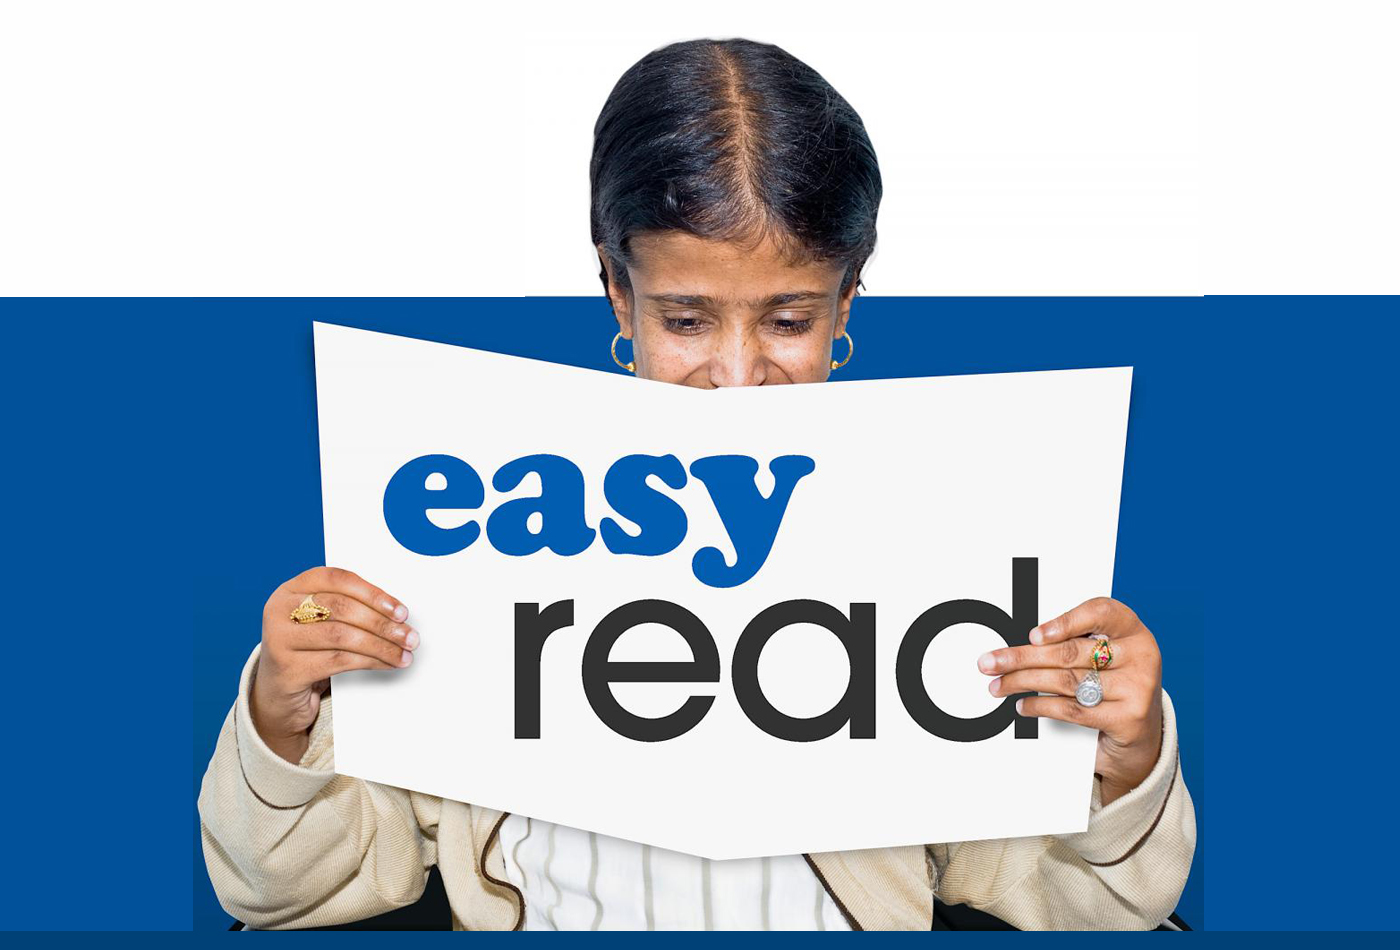 القراءة المبسطة... أداة جديدة في سبيل احتواء ذوي الإعاقة الذهنية